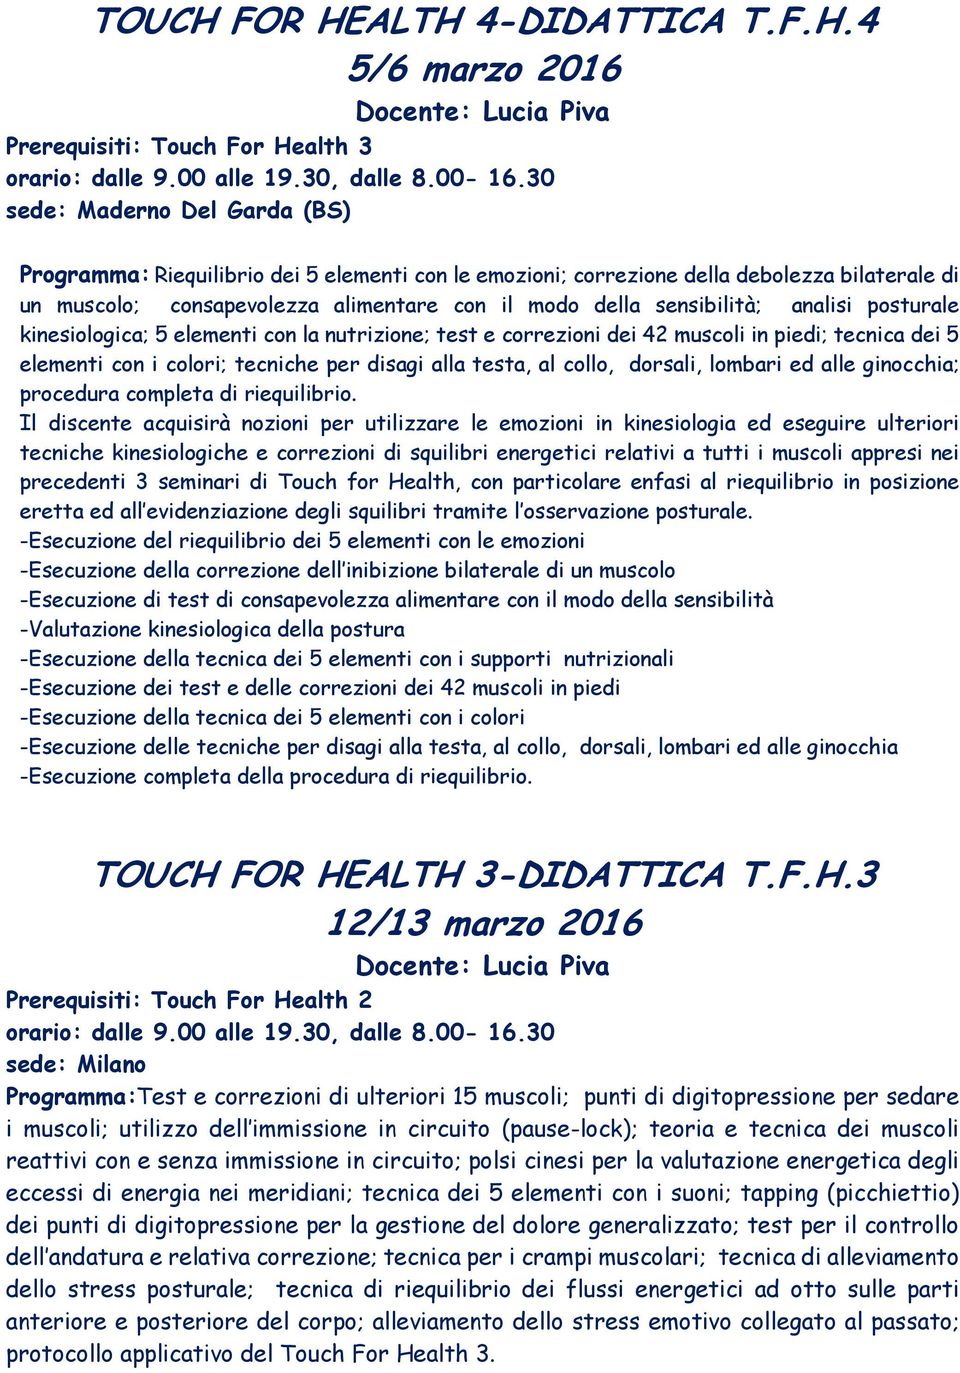 ALTH 4-DIDATTICA T.F.H.4 5/6 marzo 2016 Docente: Lucia Piva Prerequisiti: Touch For Health 3 Programma: Riequilibrio dei 5 elementi con le emozioni; correzione della debolezza bilaterale di un